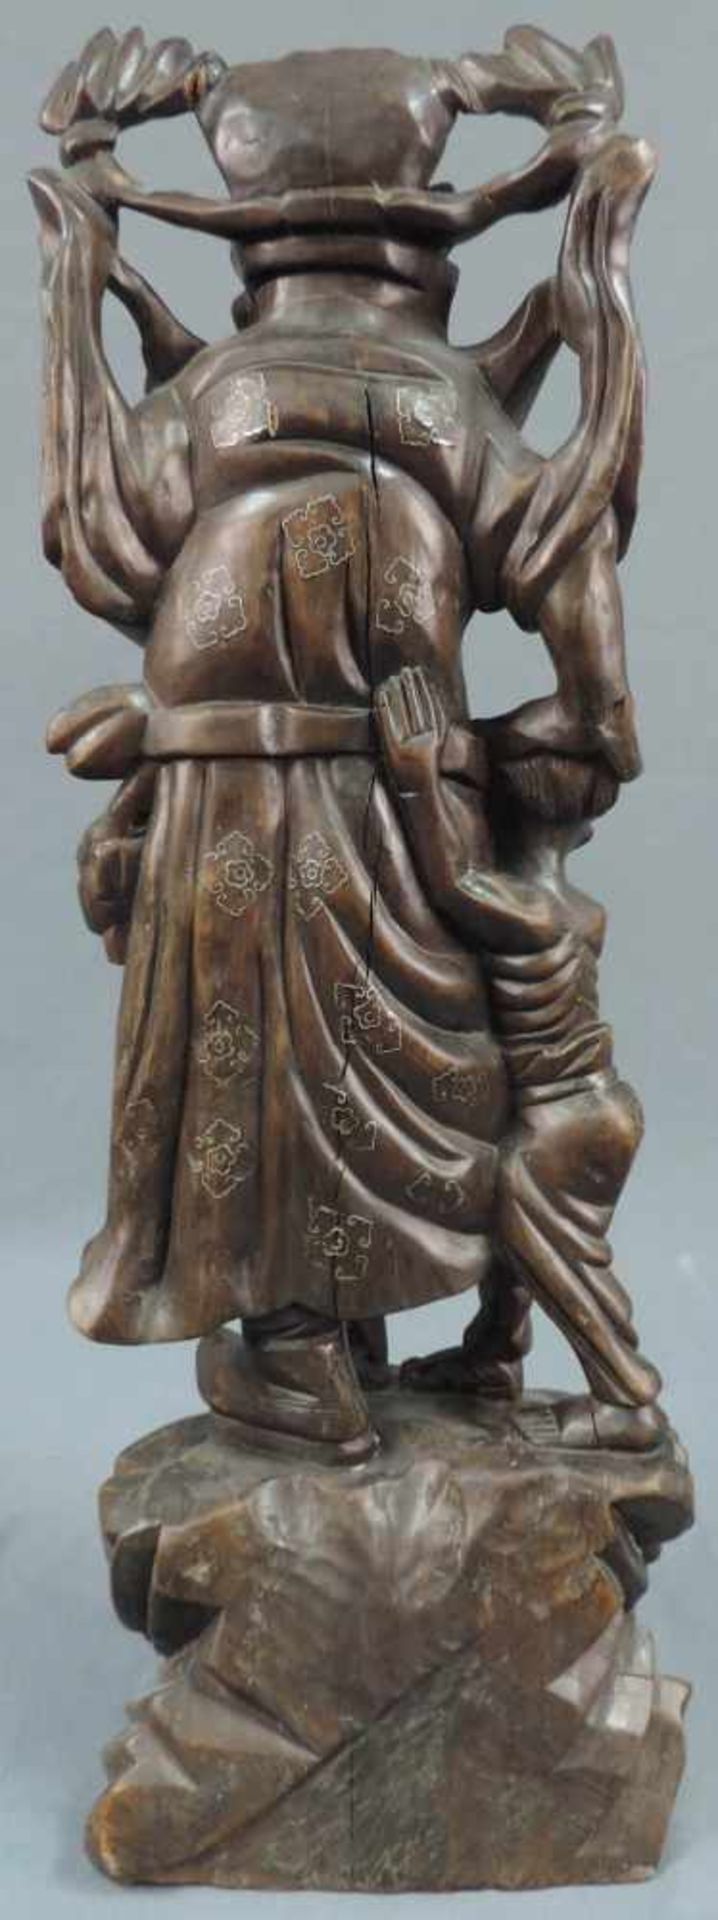 Skulptur. Holz mit Silbereinlagen, China, alt. 51 cm hoch. Wohl Kuan Kung, der chinesische Gott - Bild 4 aus 9